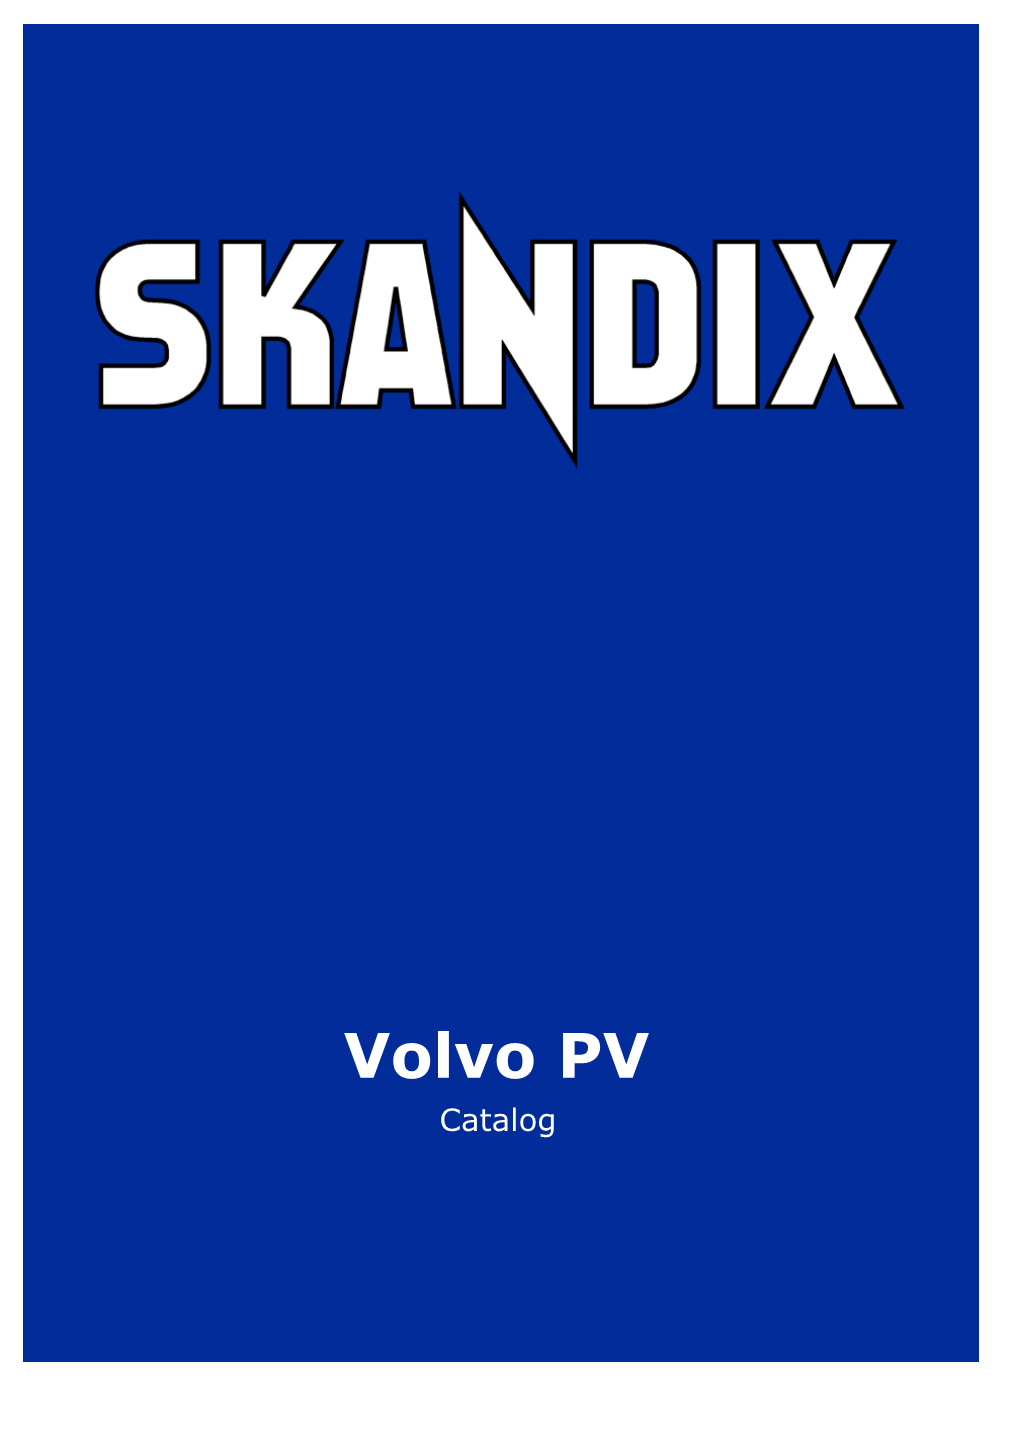 SKANDIX Catalog: Volvo PV